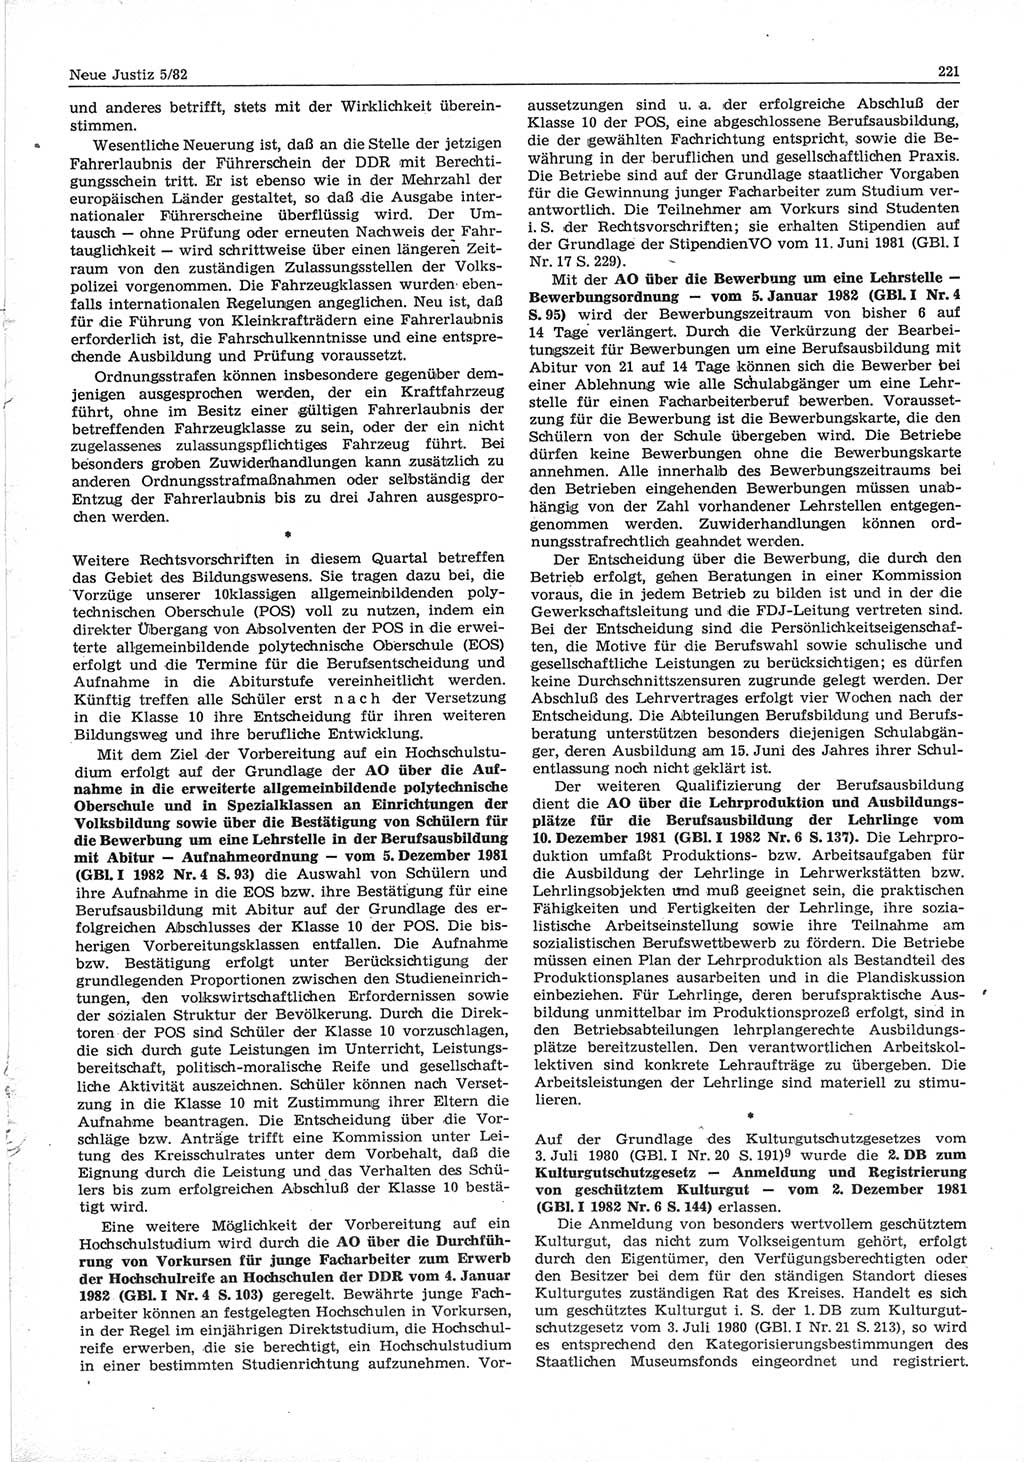 Neue Justiz (NJ), Zeitschrift für sozialistisches Recht und Gesetzlichkeit [Deutsche Demokratische Republik (DDR)], 36. Jahrgang 1982, Seite 221 (NJ DDR 1982, S. 221)